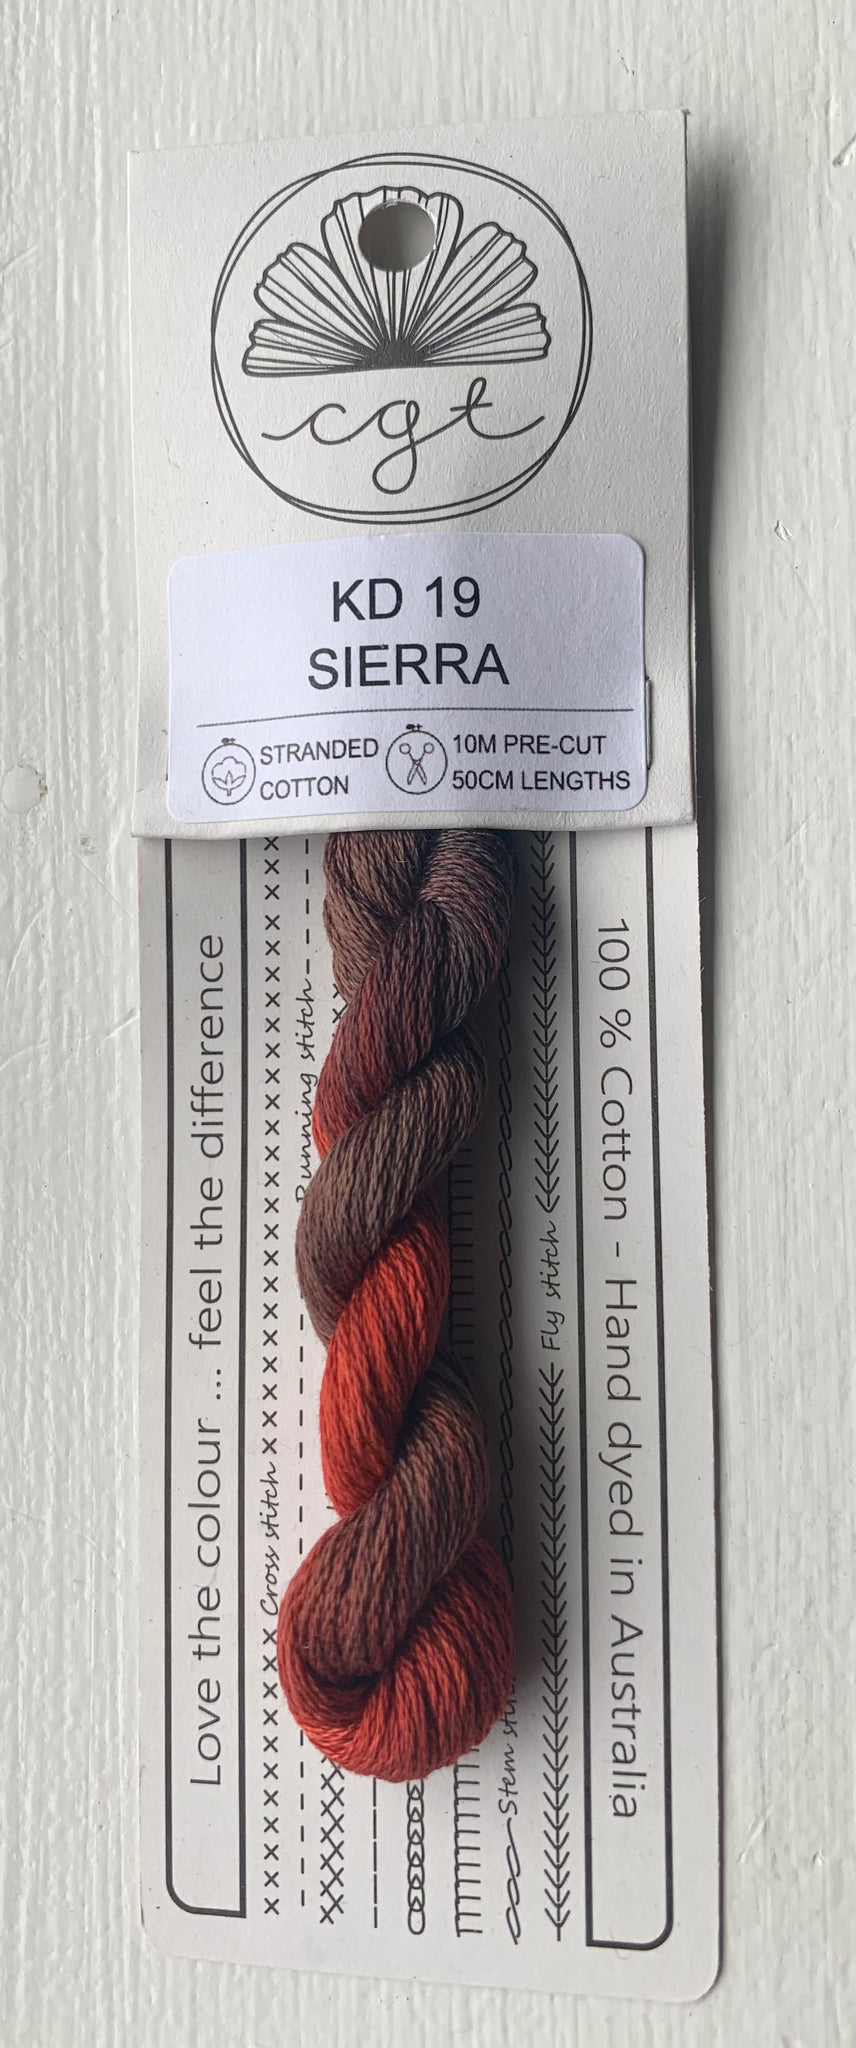 Sierra - Cottage Garden Threads